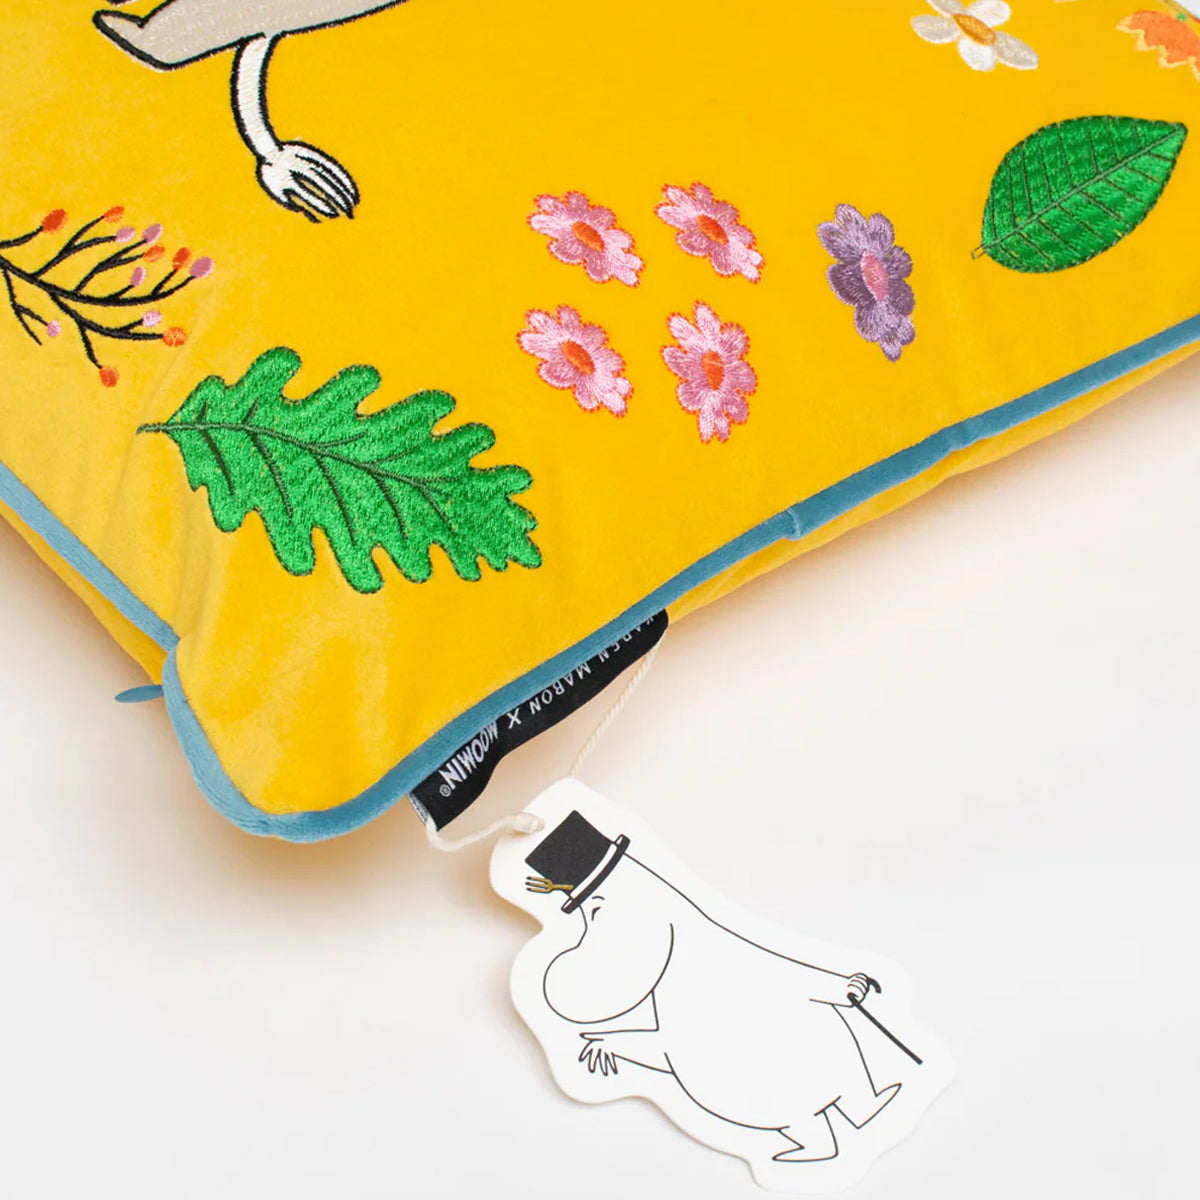 Moomintroll Embroidered Velvet Cushion Cover - Karen Mabon